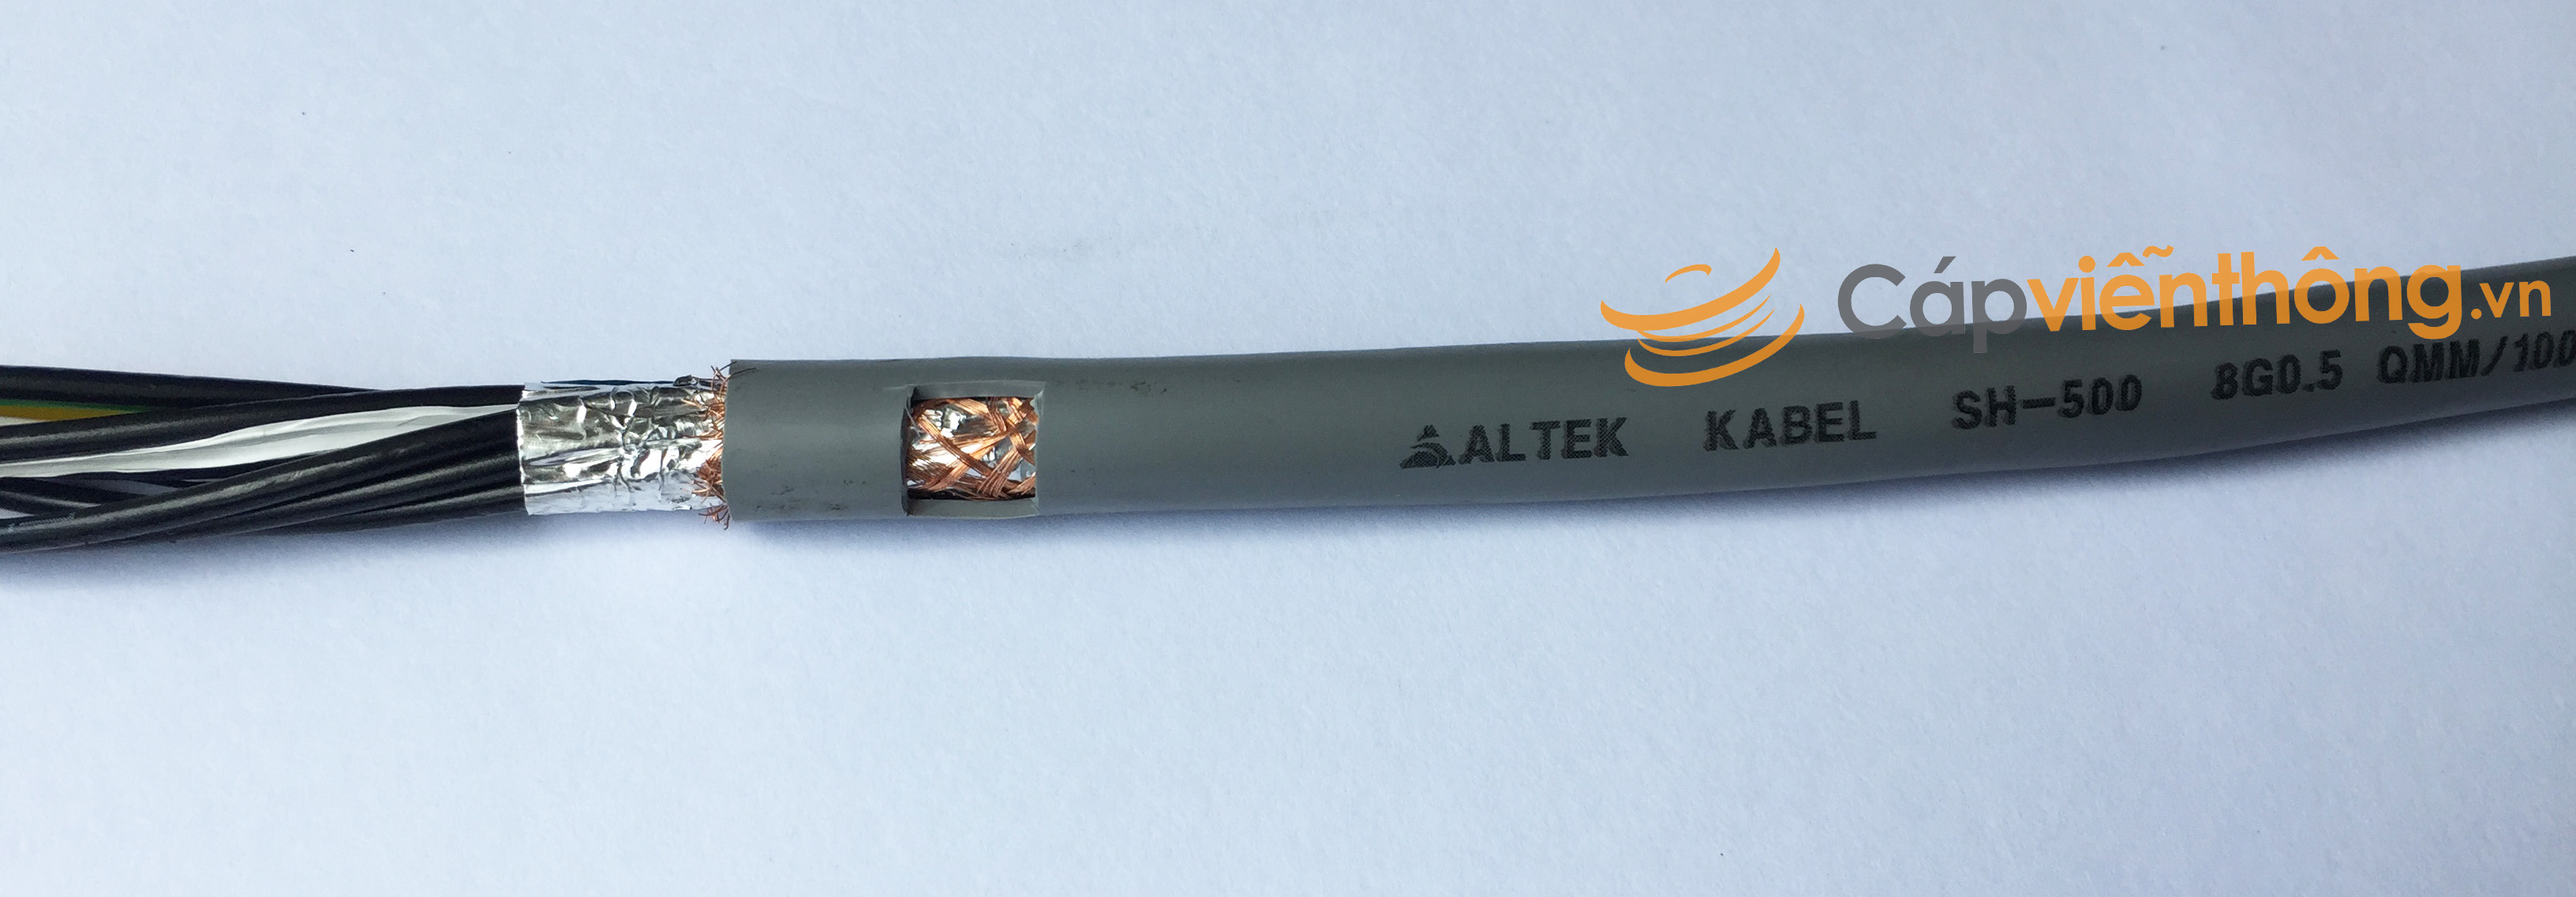 Cáp điều khiển có lưới Altek Kabel SH-500 8G 0.5QMM